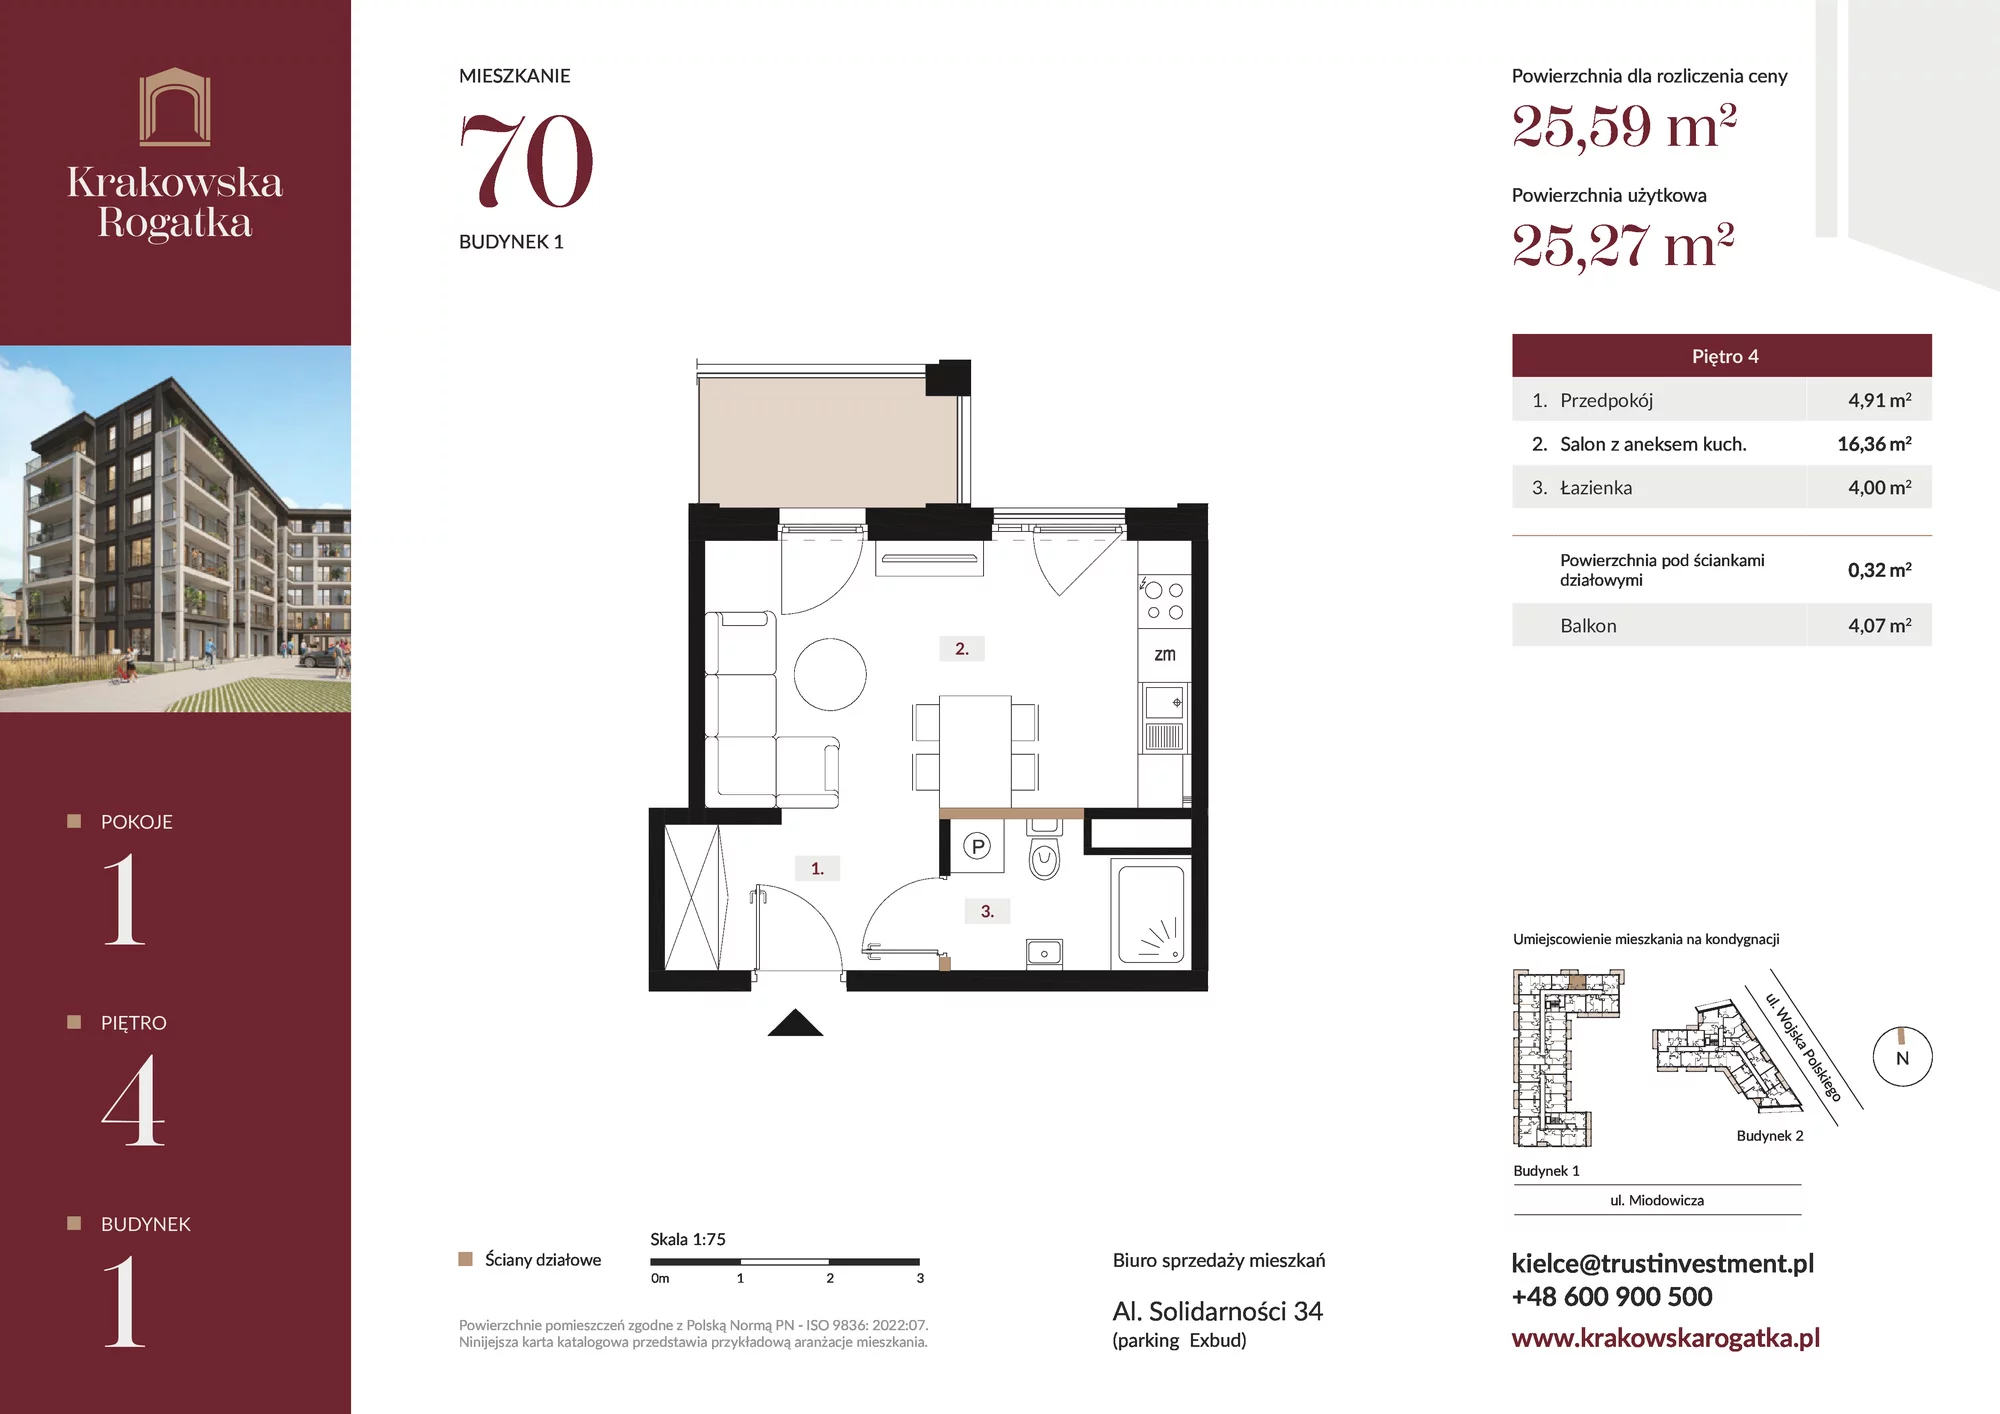 Mieszkanie 25,59 m², piętro 4, oferta nr Budynek 1 Mieszkanie 70, Krakowska Rogatka, Kielce, ul. Miodowicza 1